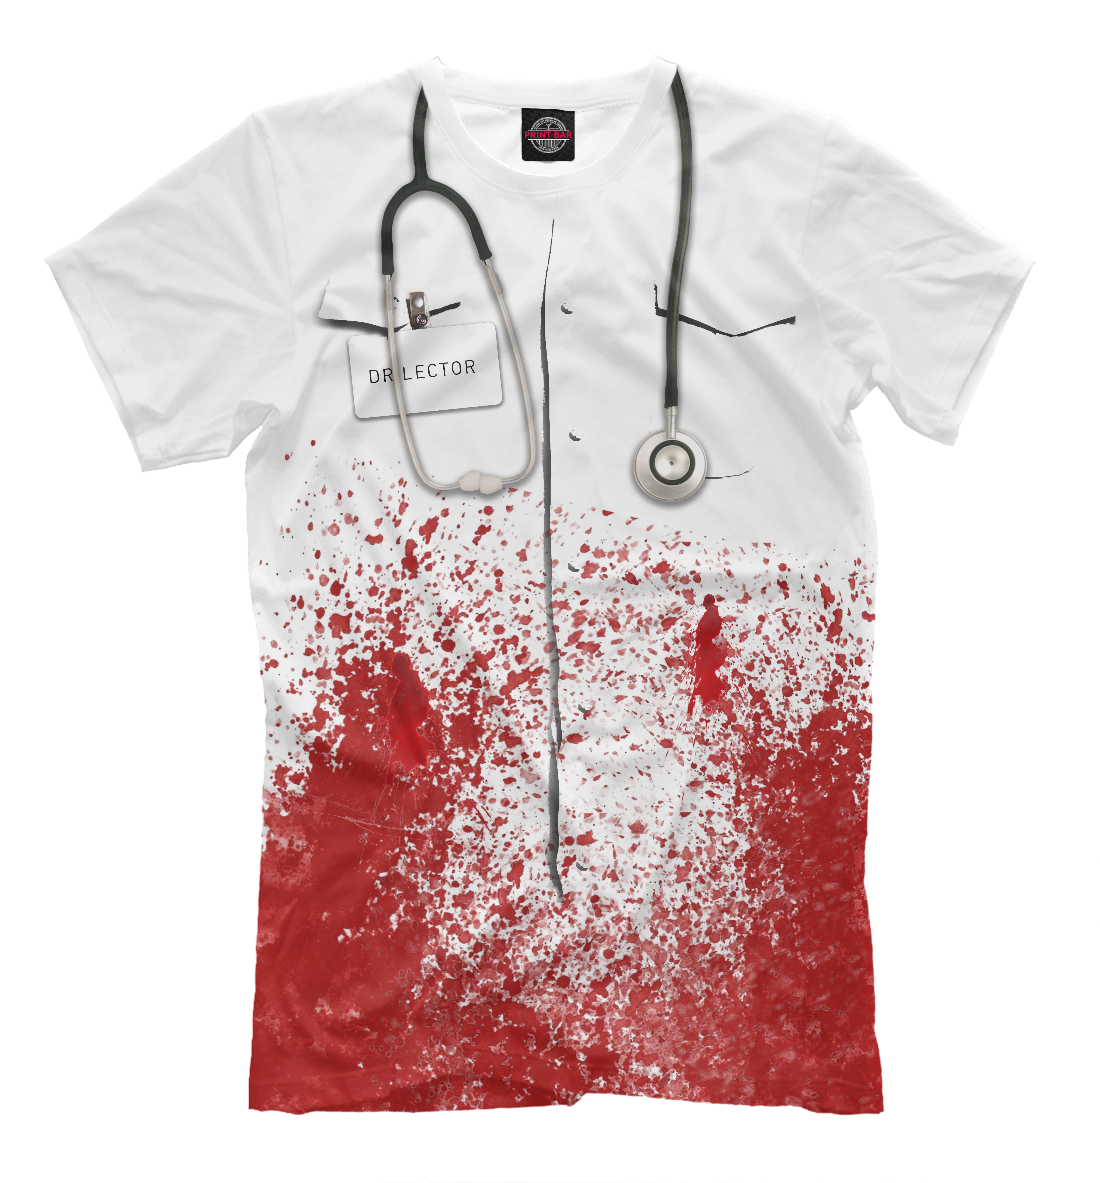 Футболка bloody doctor для мужчин, артикул: HAL-556232-fut-2mp